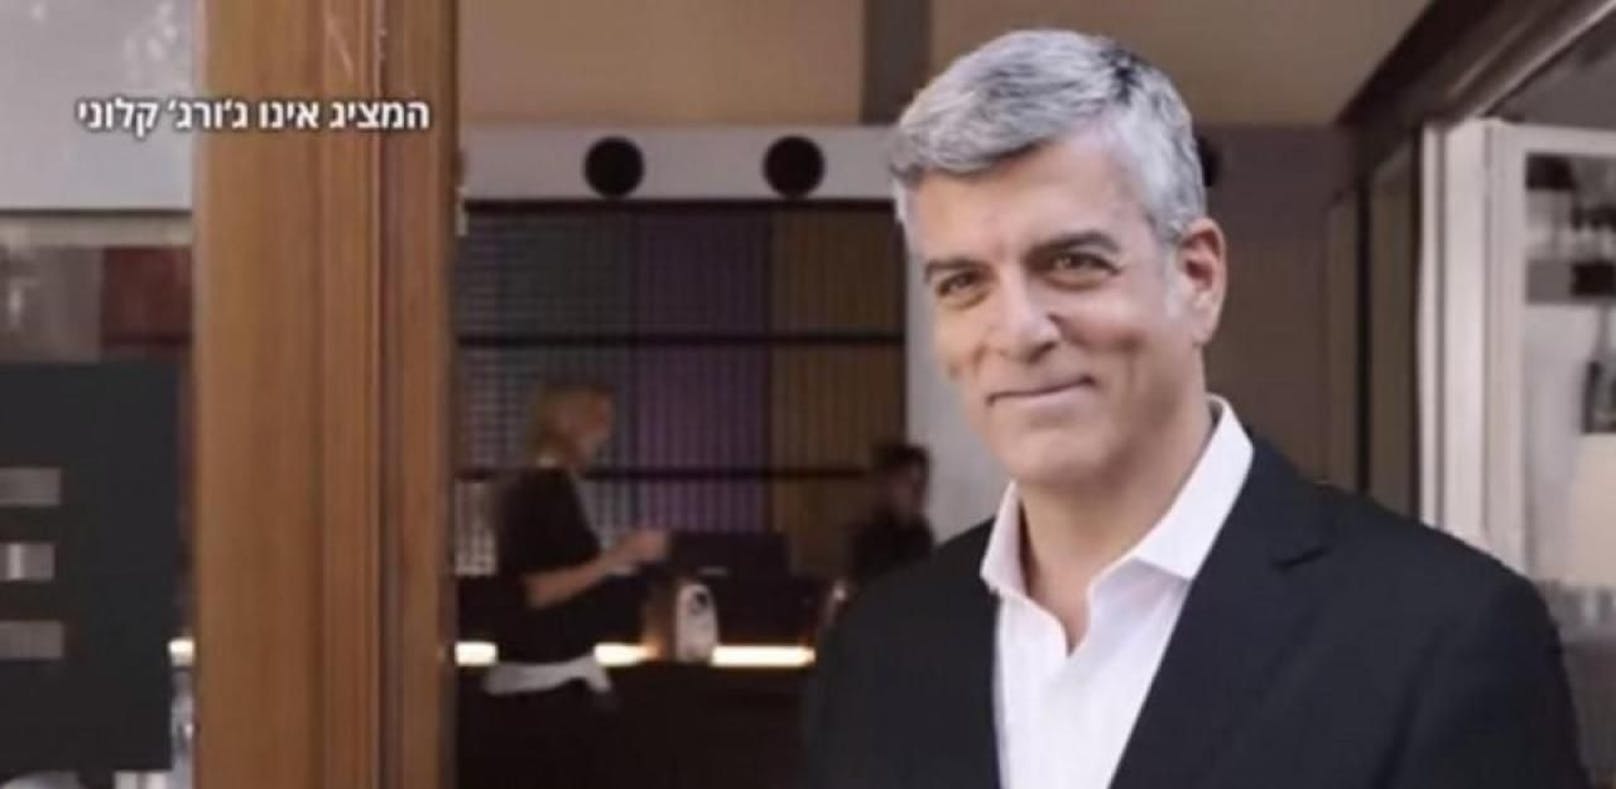 Nespresso kocht vor Wut: Israeli kopieren Clooney